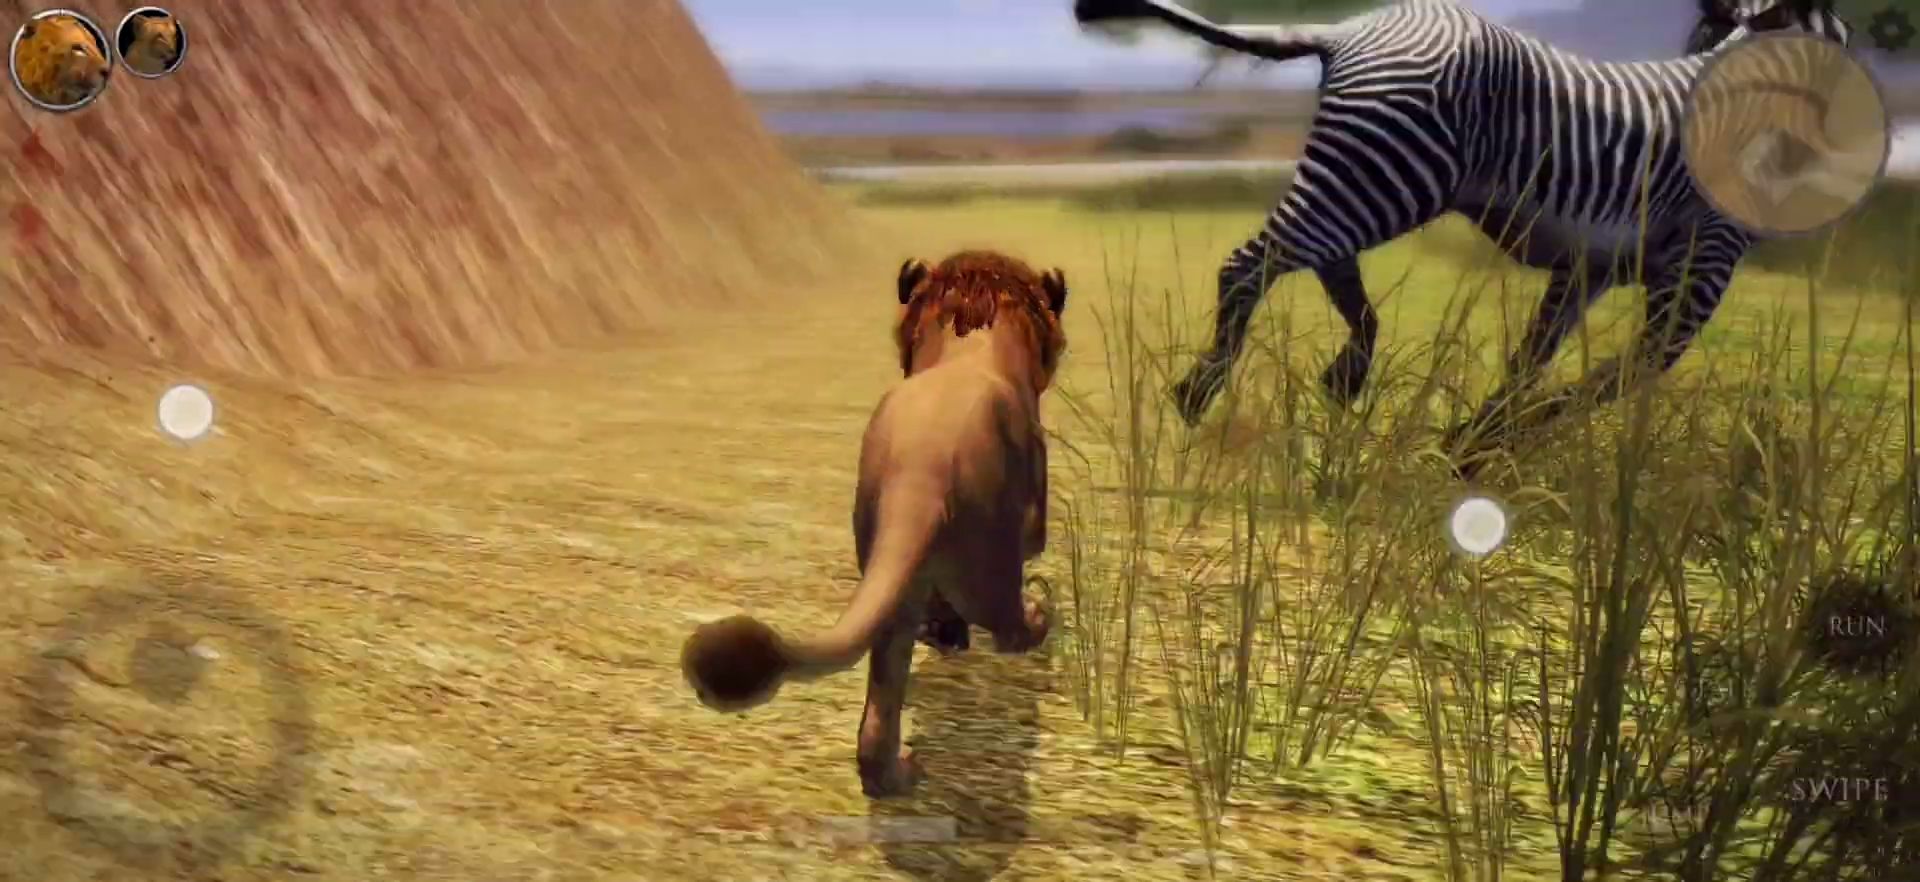 Ultimate Lion Simulator 2 screenshot 1